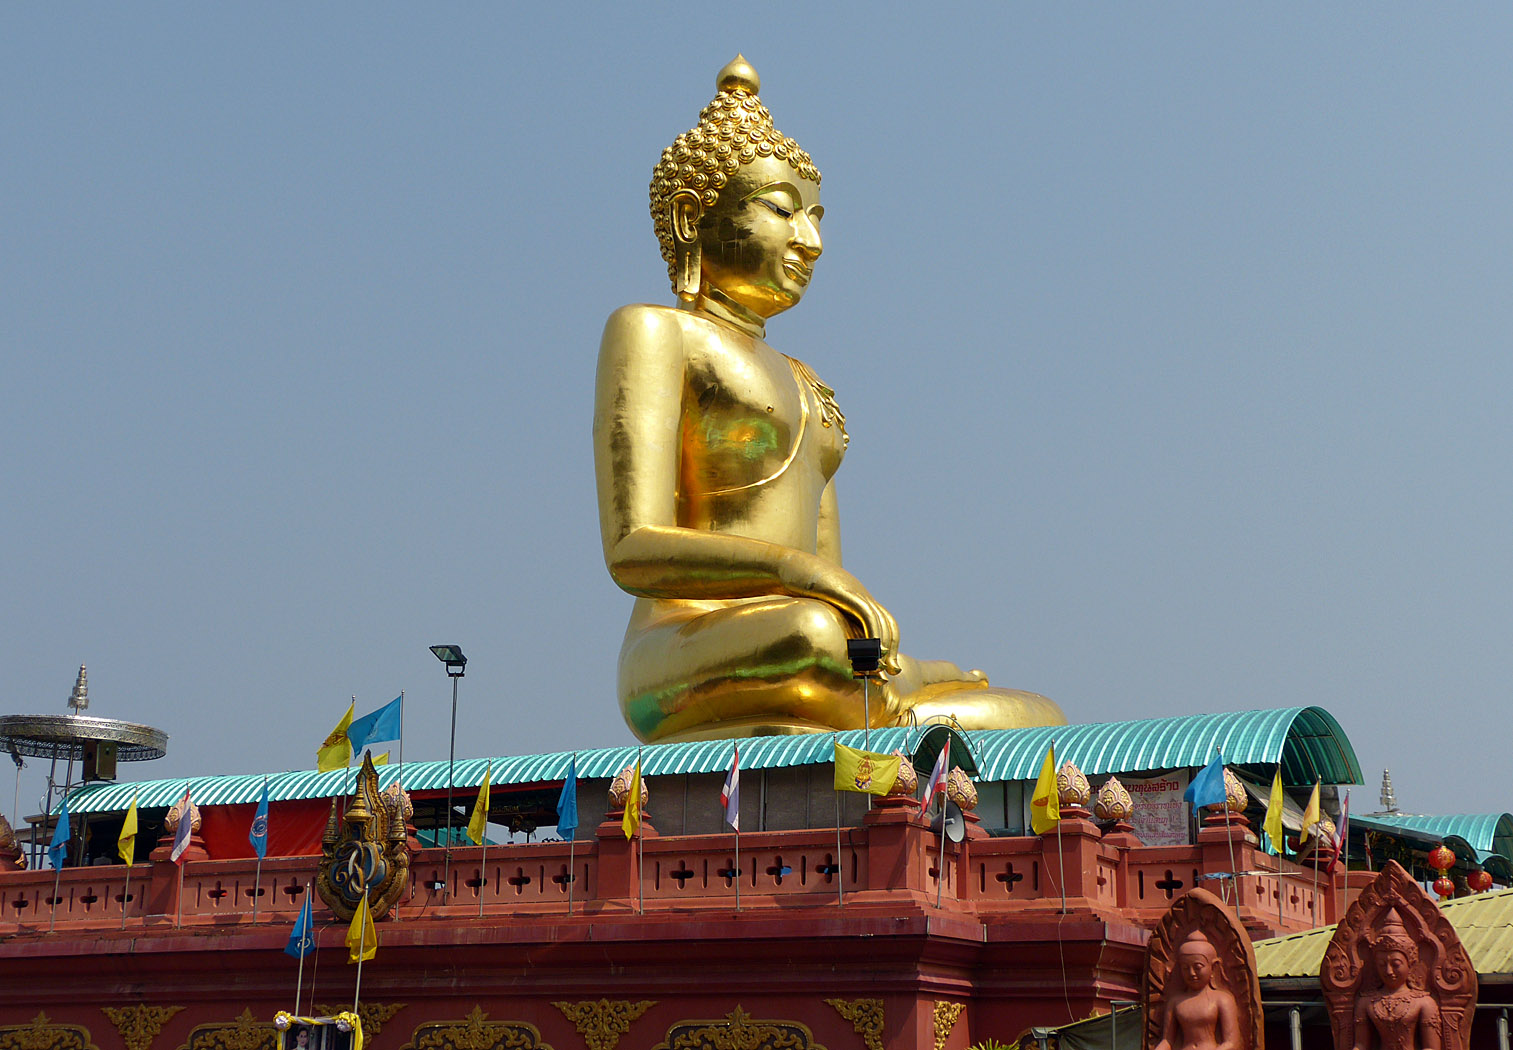 Giant Buddha, Sop Ruak, Thailand